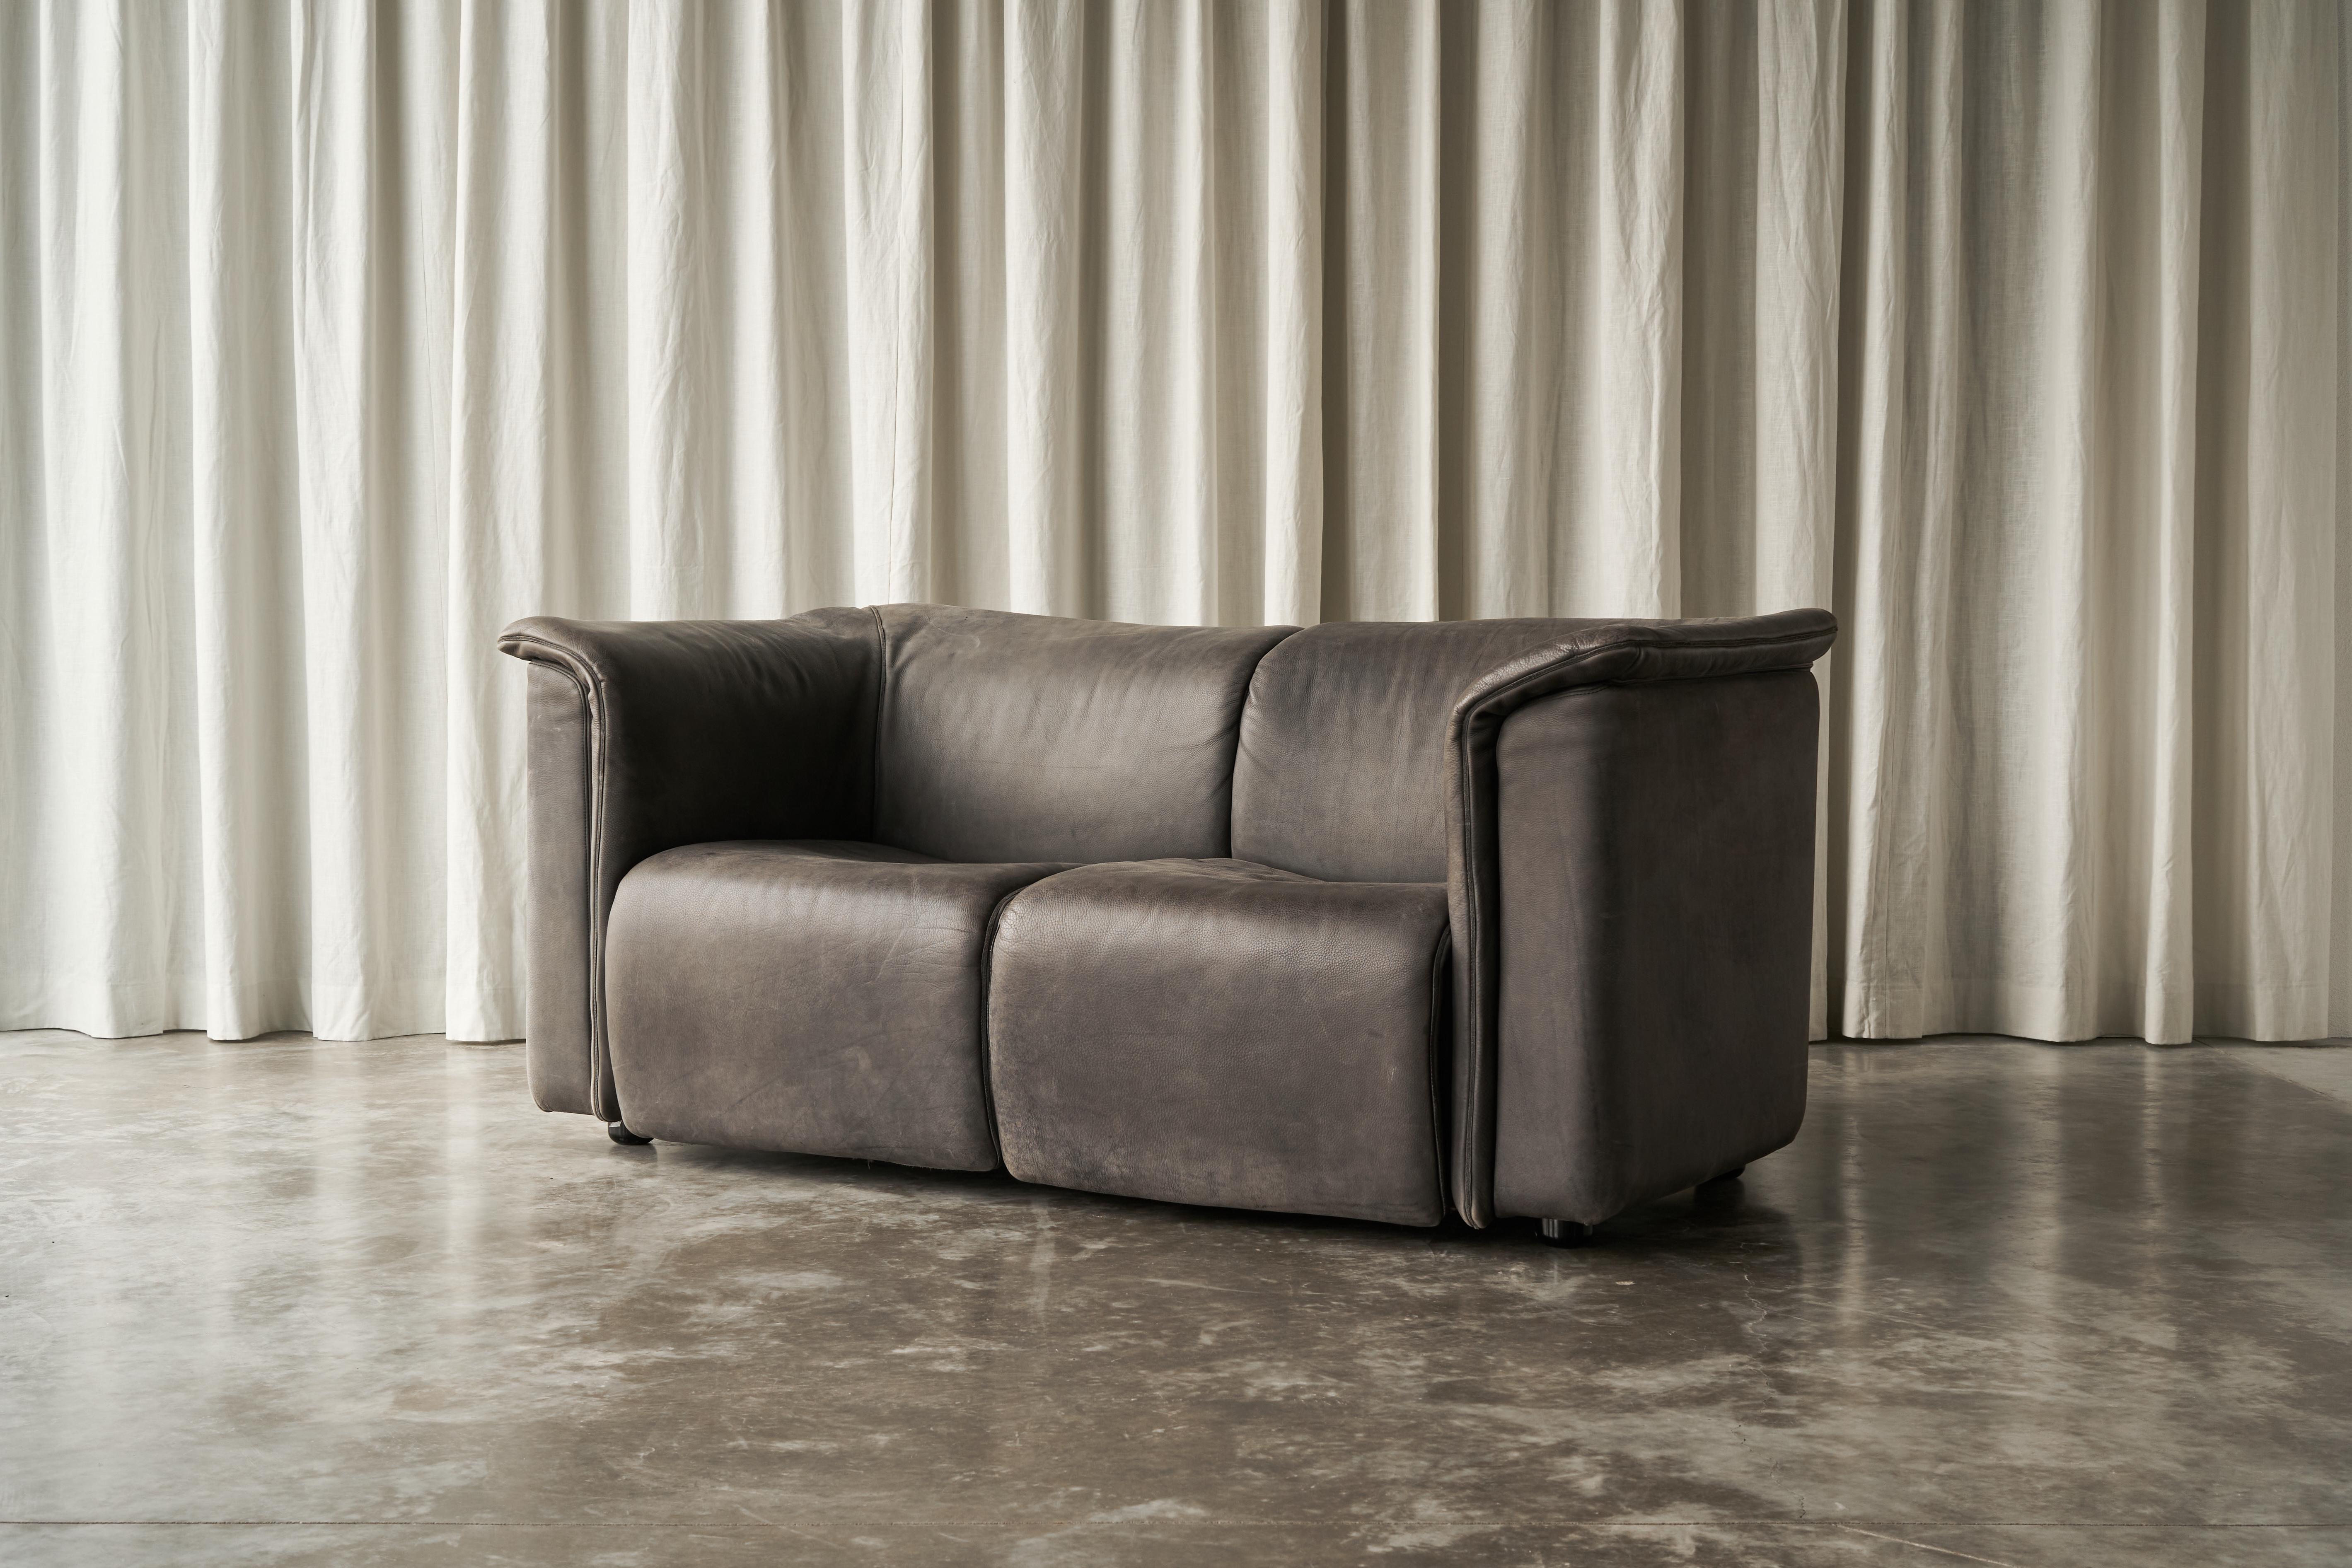 Karl Wittmann Sofa aus patiniertem grauem Leder, Österreich, 1980er Jahre.

Dieses modernistische Sofa wurde Anfang der 1980er Jahre von Karl Wittmann für Wittmann Möbelwerkstätten entworfen. Die österreichische Möbelmarke ist international für ihre